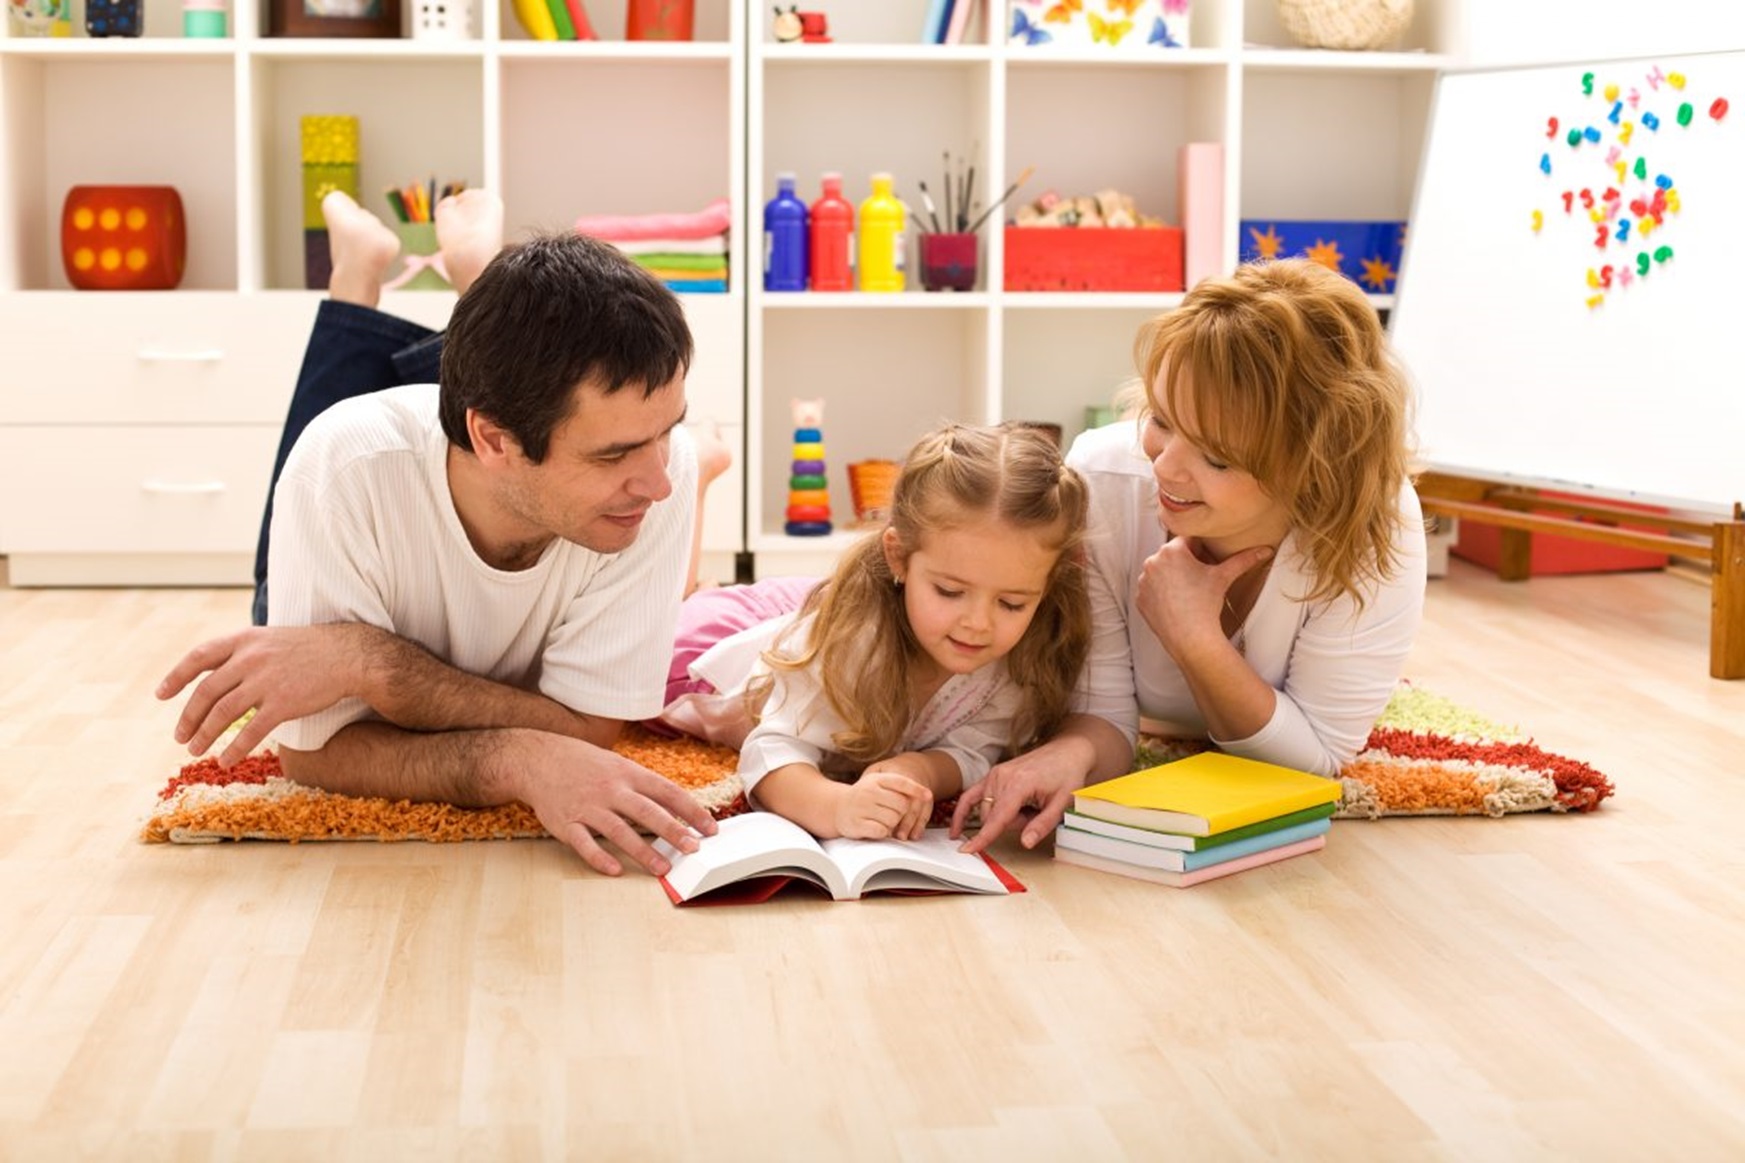 Дитина з РАС – поради батькам щодо виховання і   навчання дітей в сім’ї